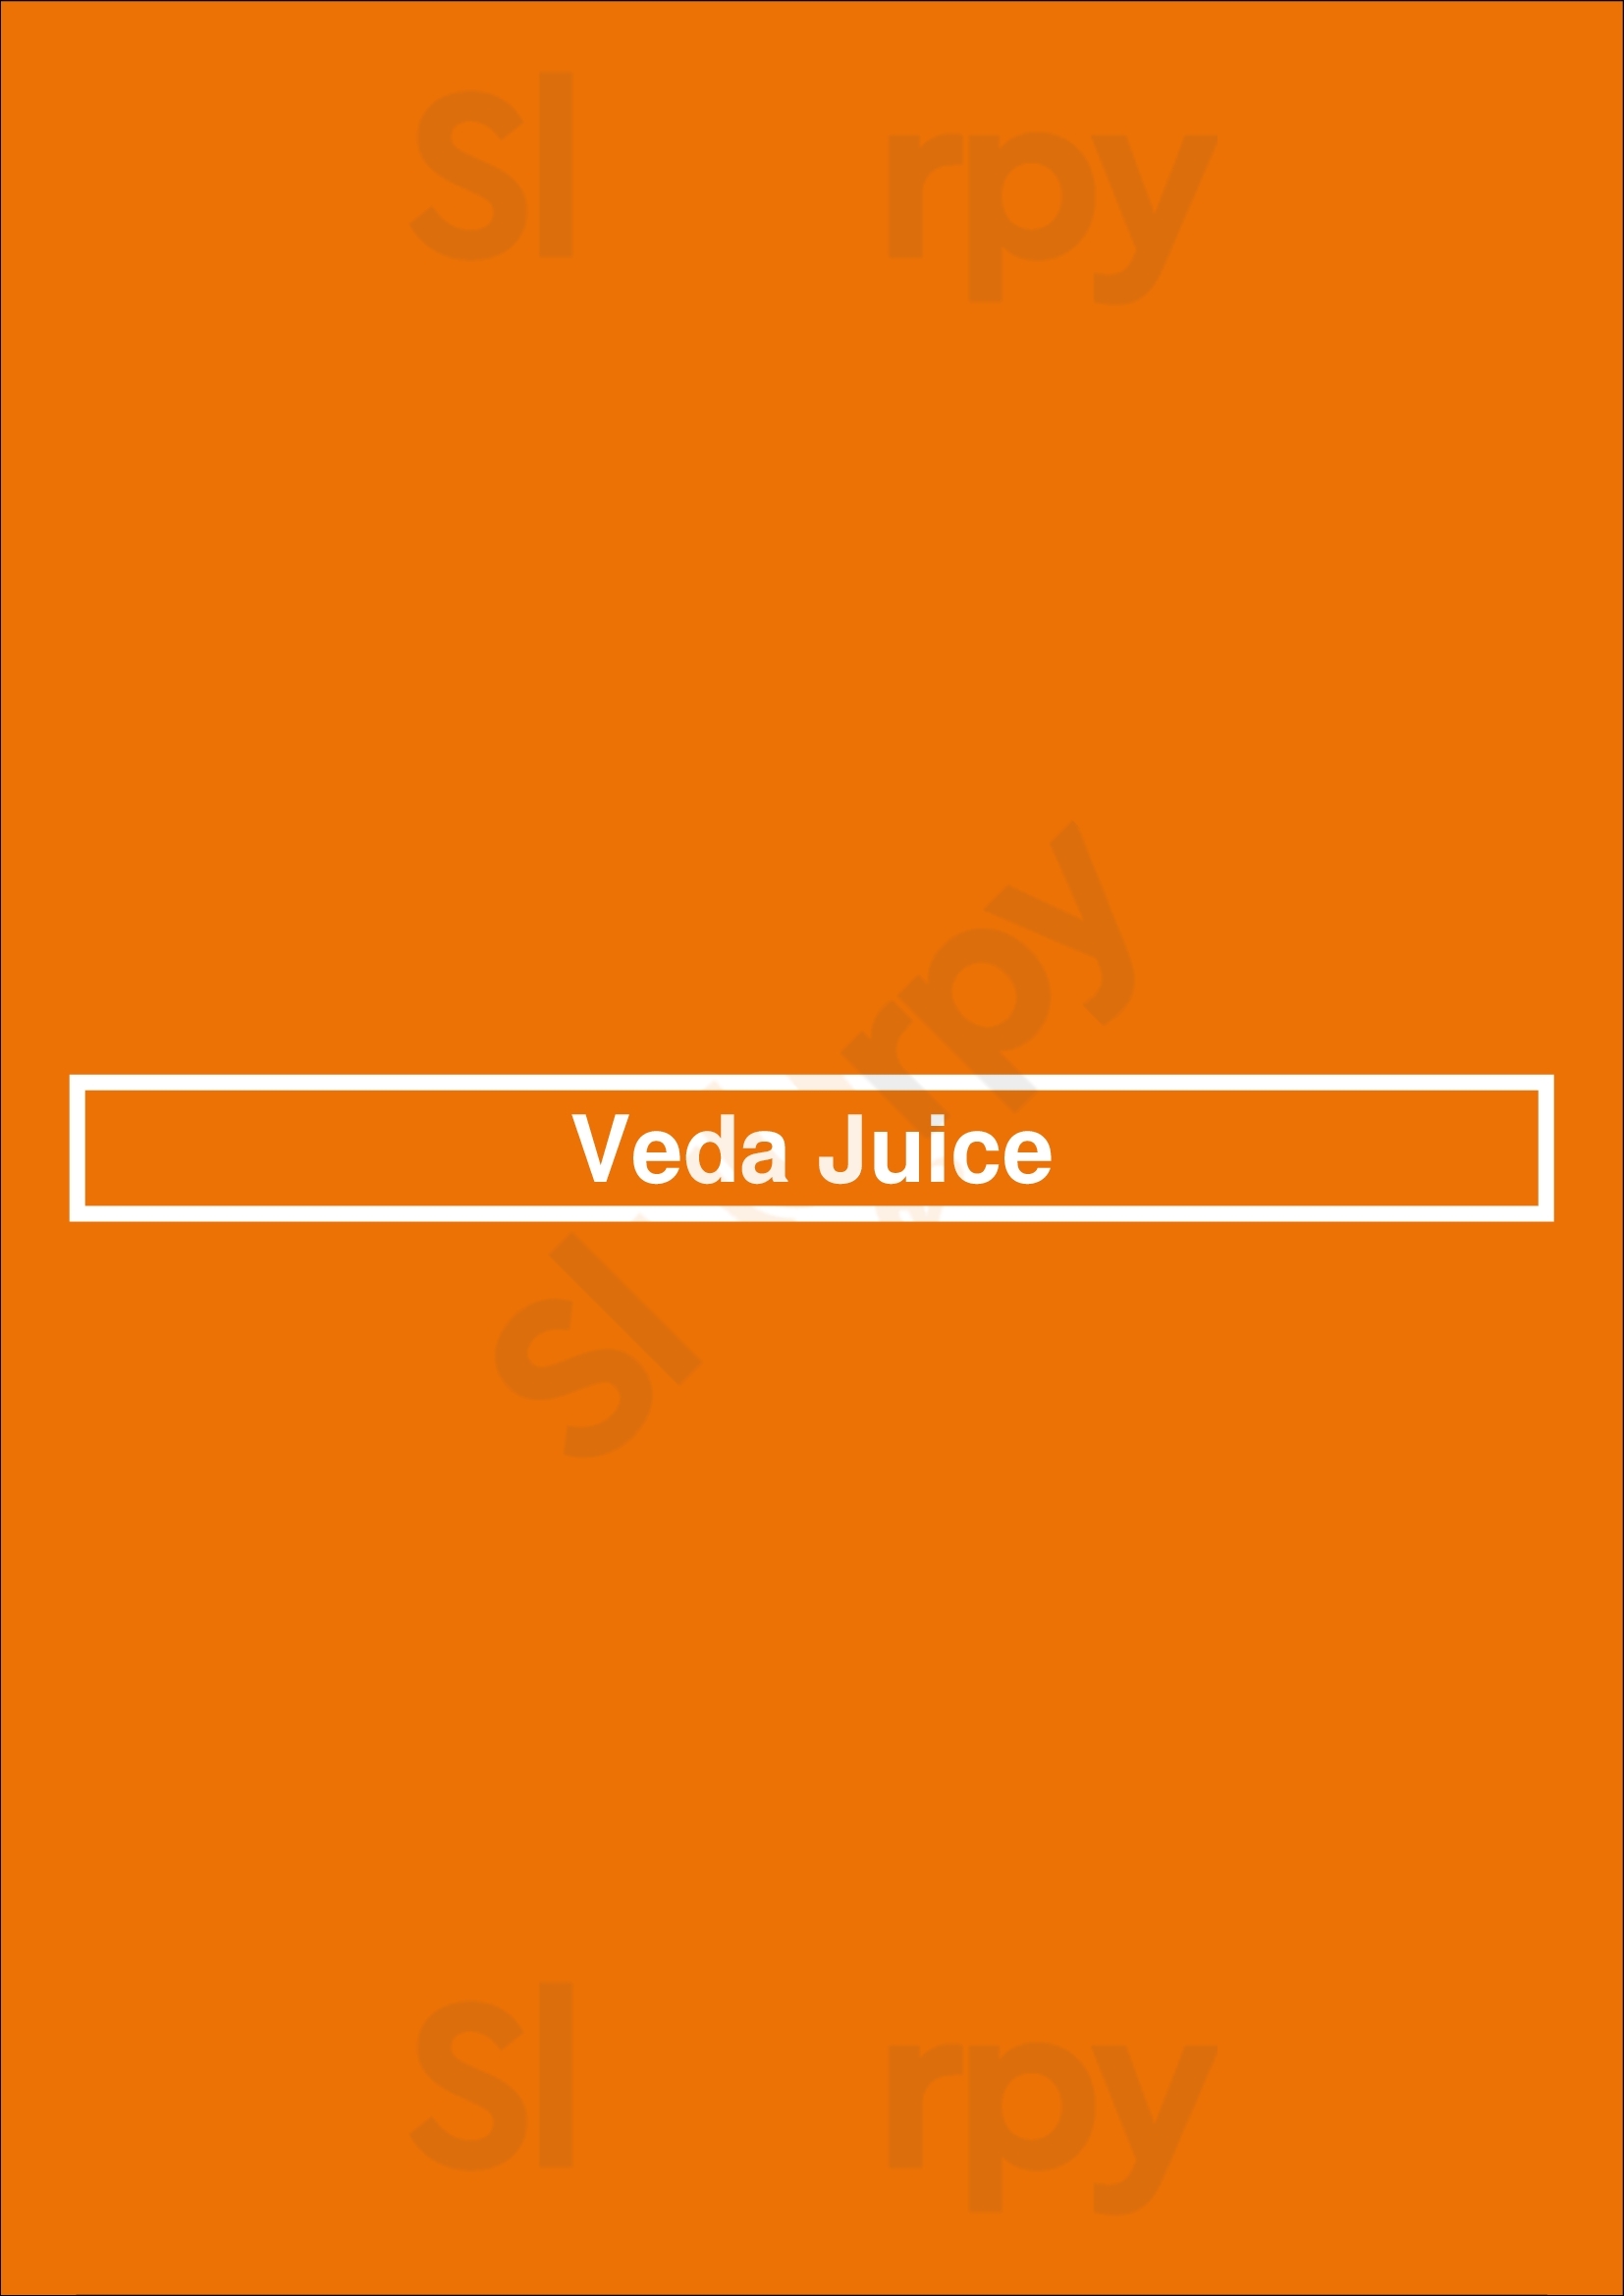 Veda Juice Bar Atlanta Menu - 1